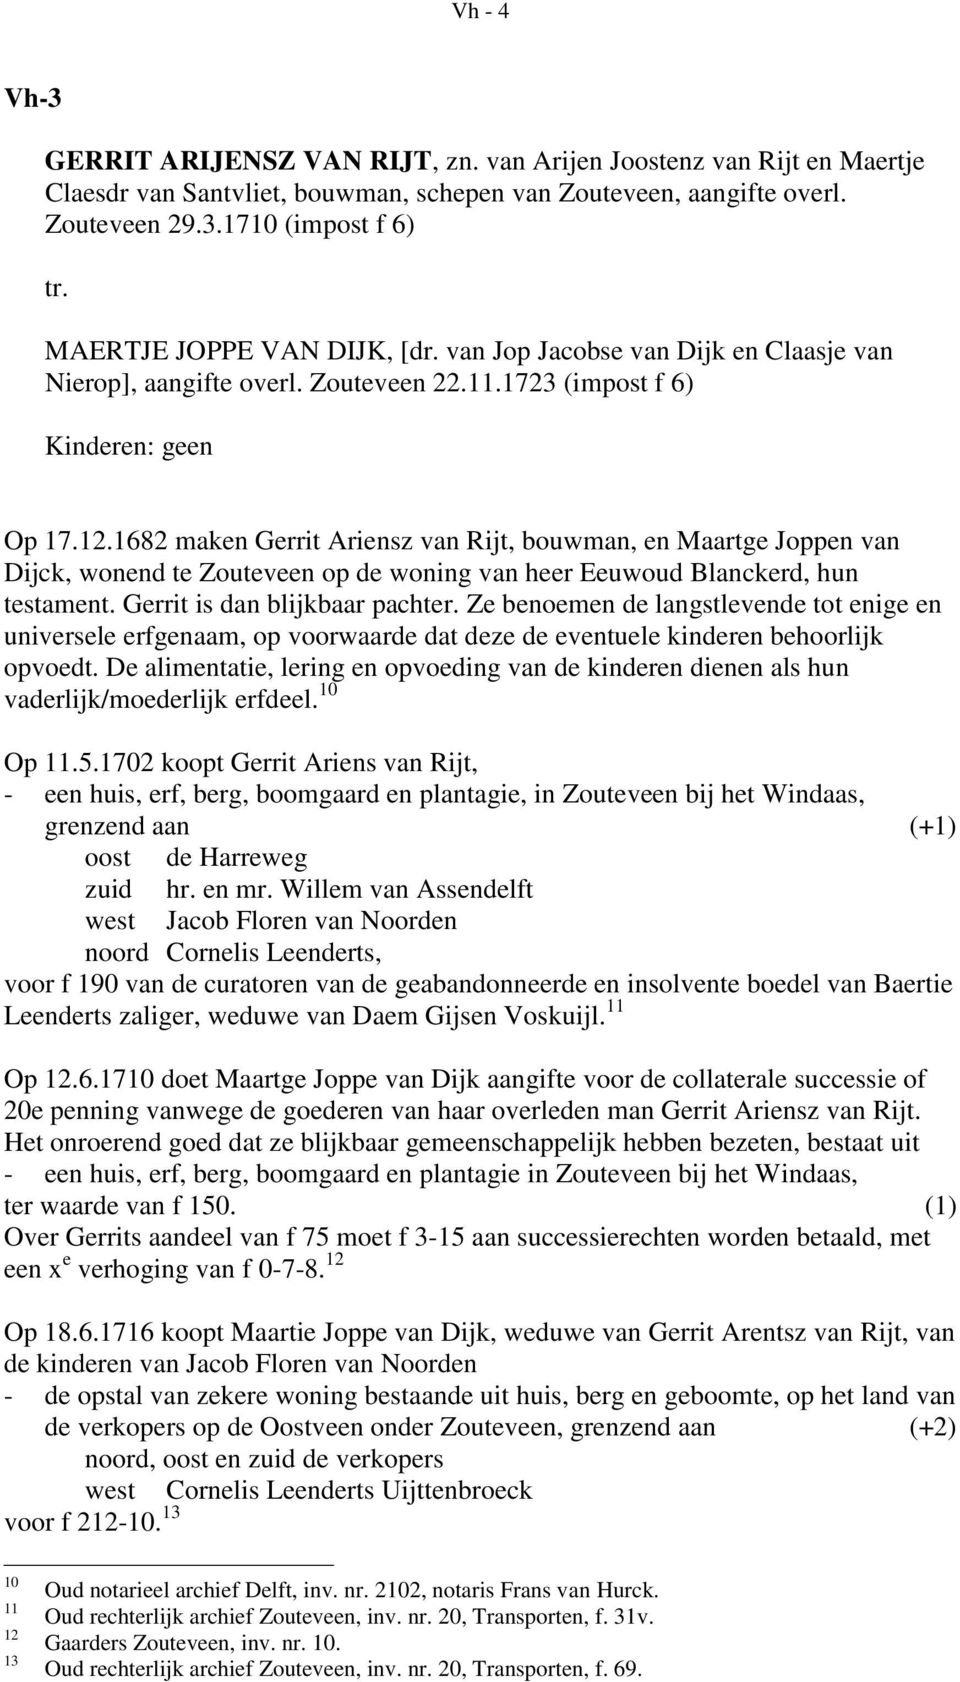 1682 maken Gerrit Ariensz van Rijt, bouwman, en Maartge Joppen van Dijck, wonend te Zouteveen op de woning van heer Eeuwoud Blanckerd, hun testament. Gerrit is dan blijkbaar pachter.